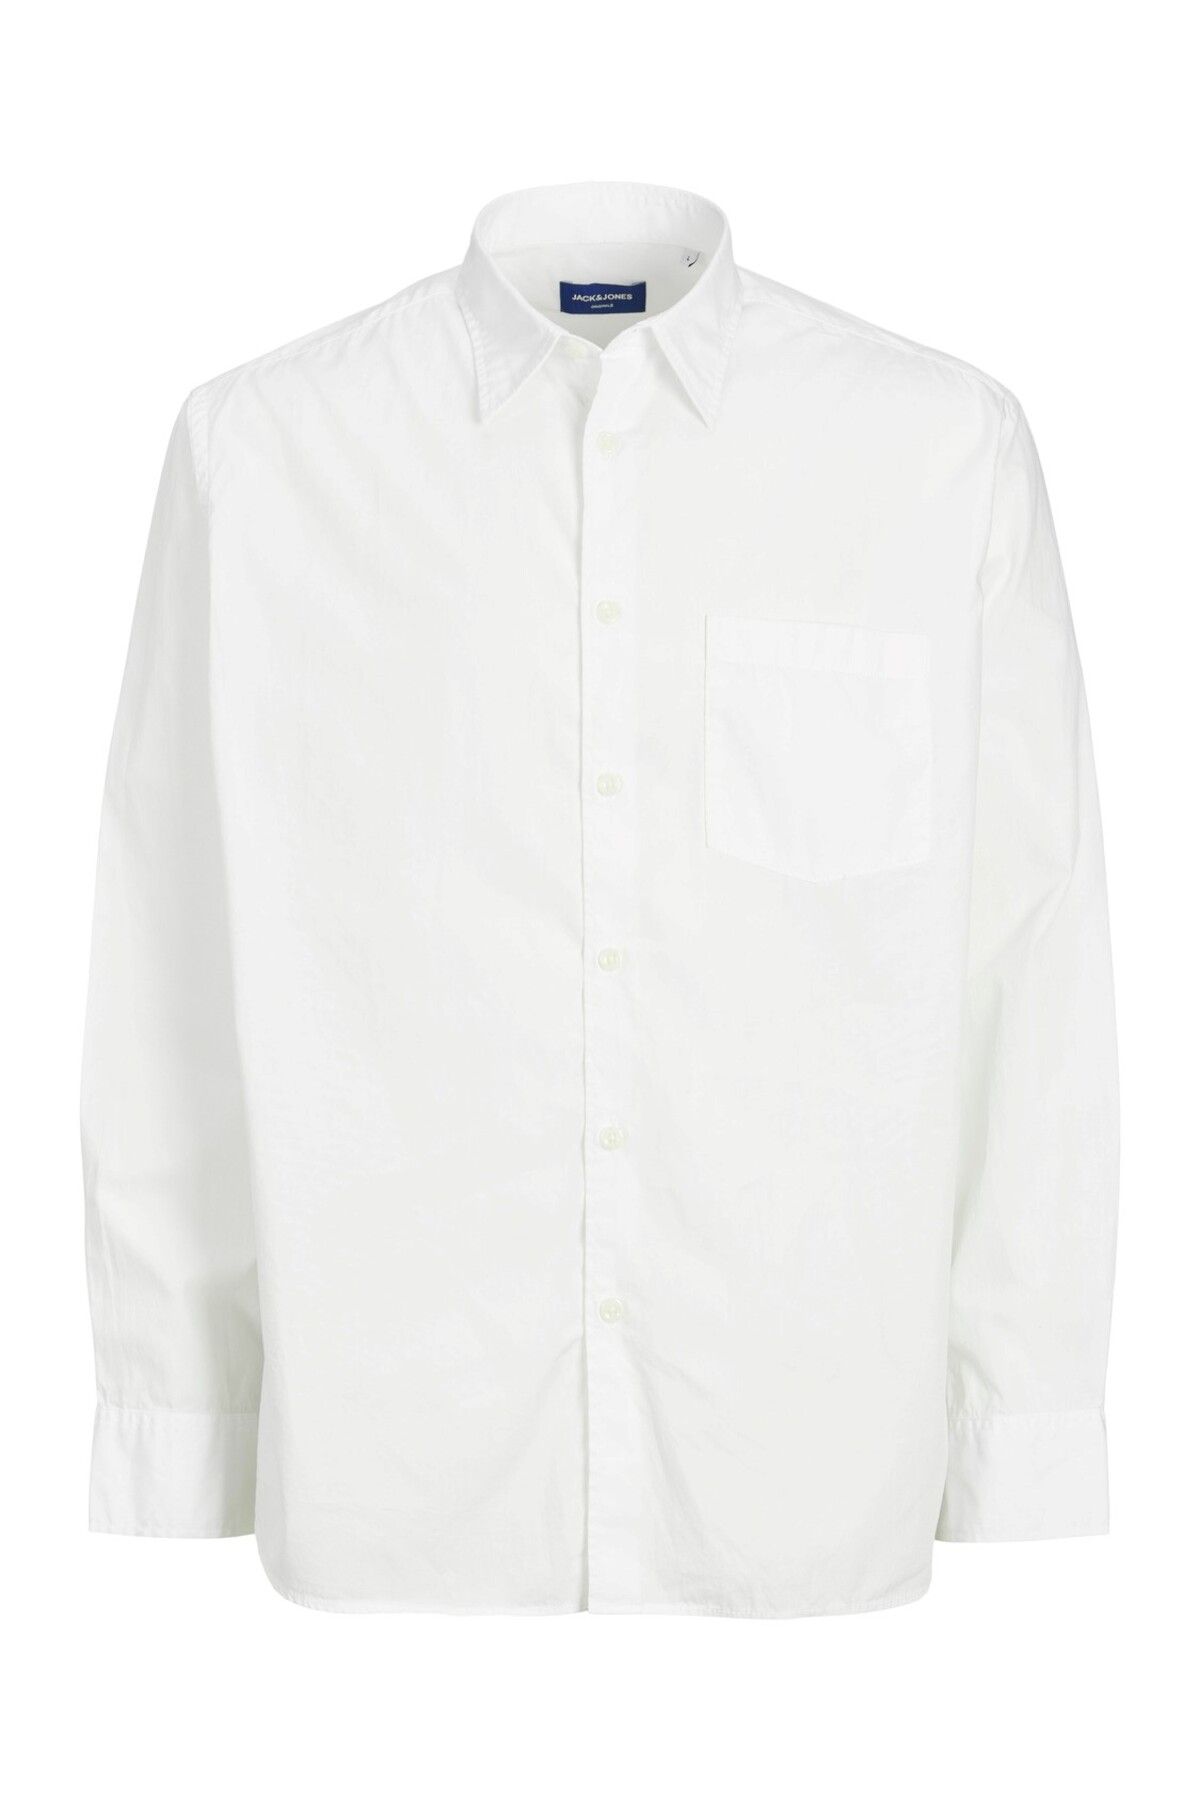 Jack & Jones Jack&jones Gömlek Yaka Düğmeli Uzun Kollu Beyaz Erkek Gömlek 12233117